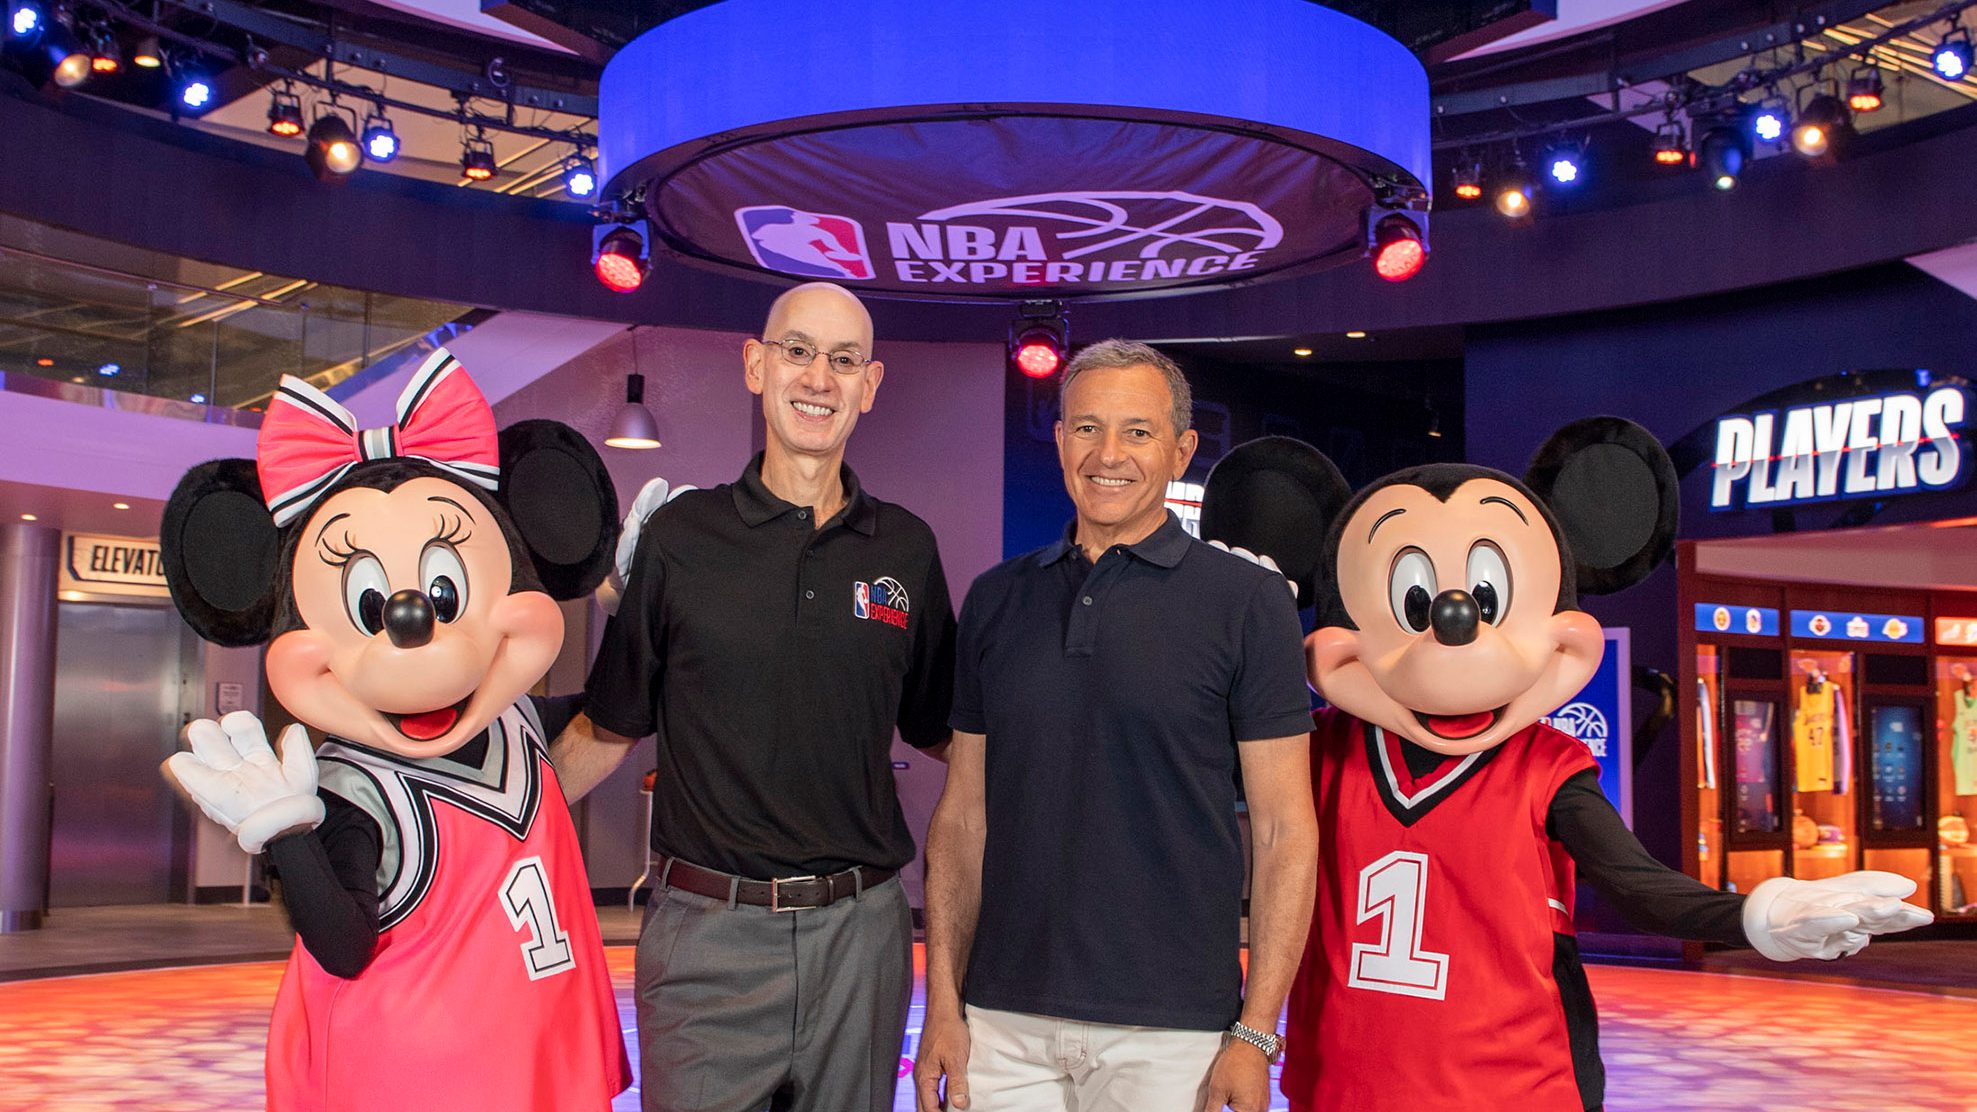 NBA Experience at Disney